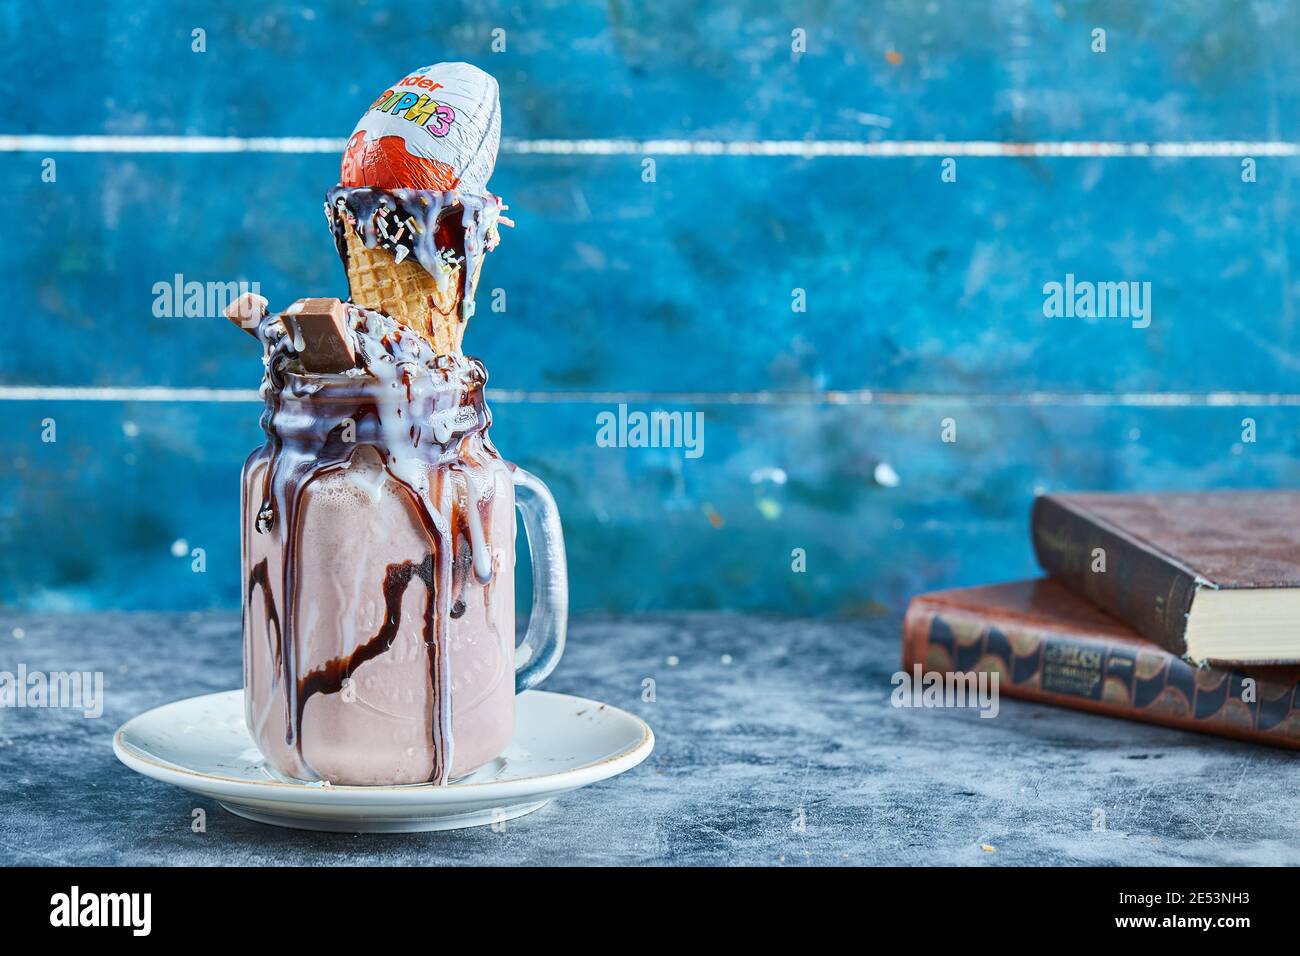 Frullato di cioccolato con barretta di cioccolato, sorpresa di kinder, cono gelato sul piatto bianco Foto Stock